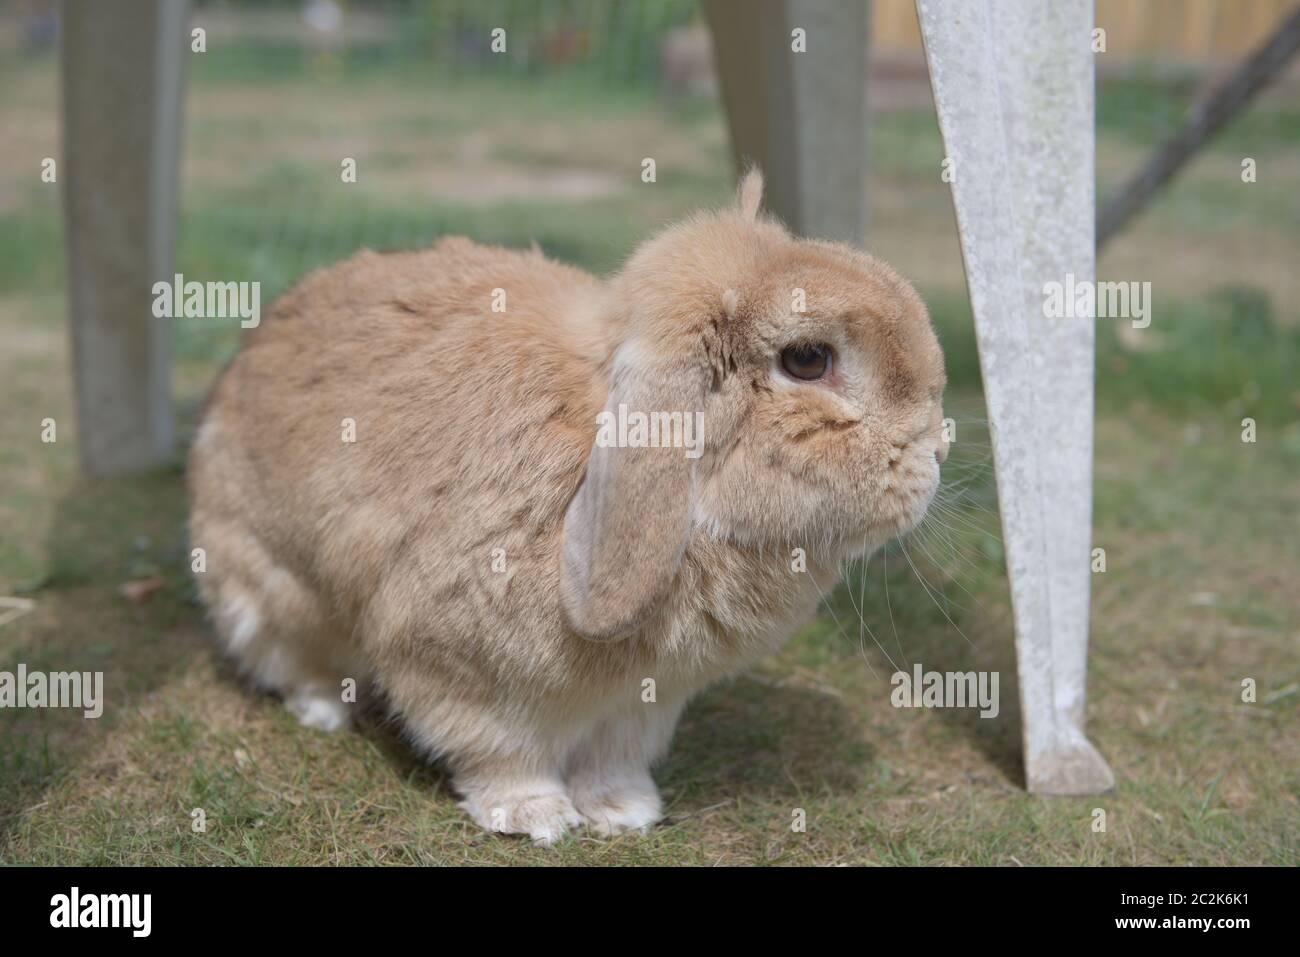 Molto carino nana sabbia lop coniglio animale esplora mobili da giardino all'aperto in sole luminoso, su erba corta in penna. Estata giorno e grandi occhi marroni. Foto Stock